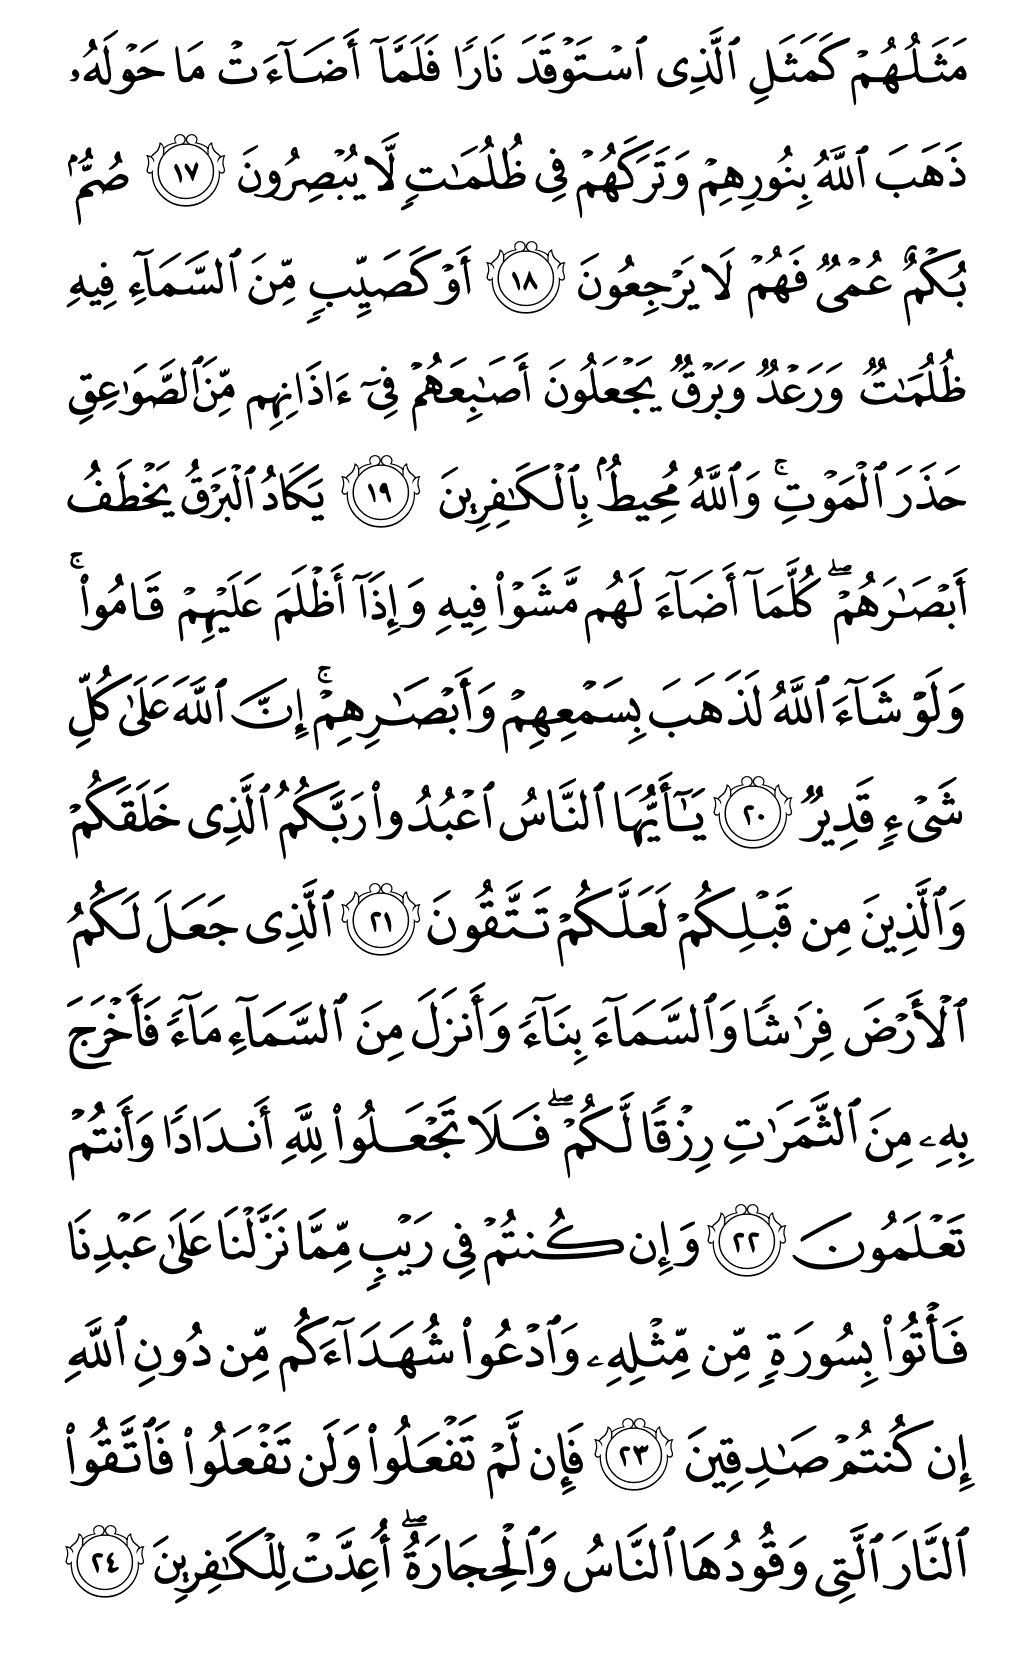 الصفحة رقم 4 من القرآن الكريم